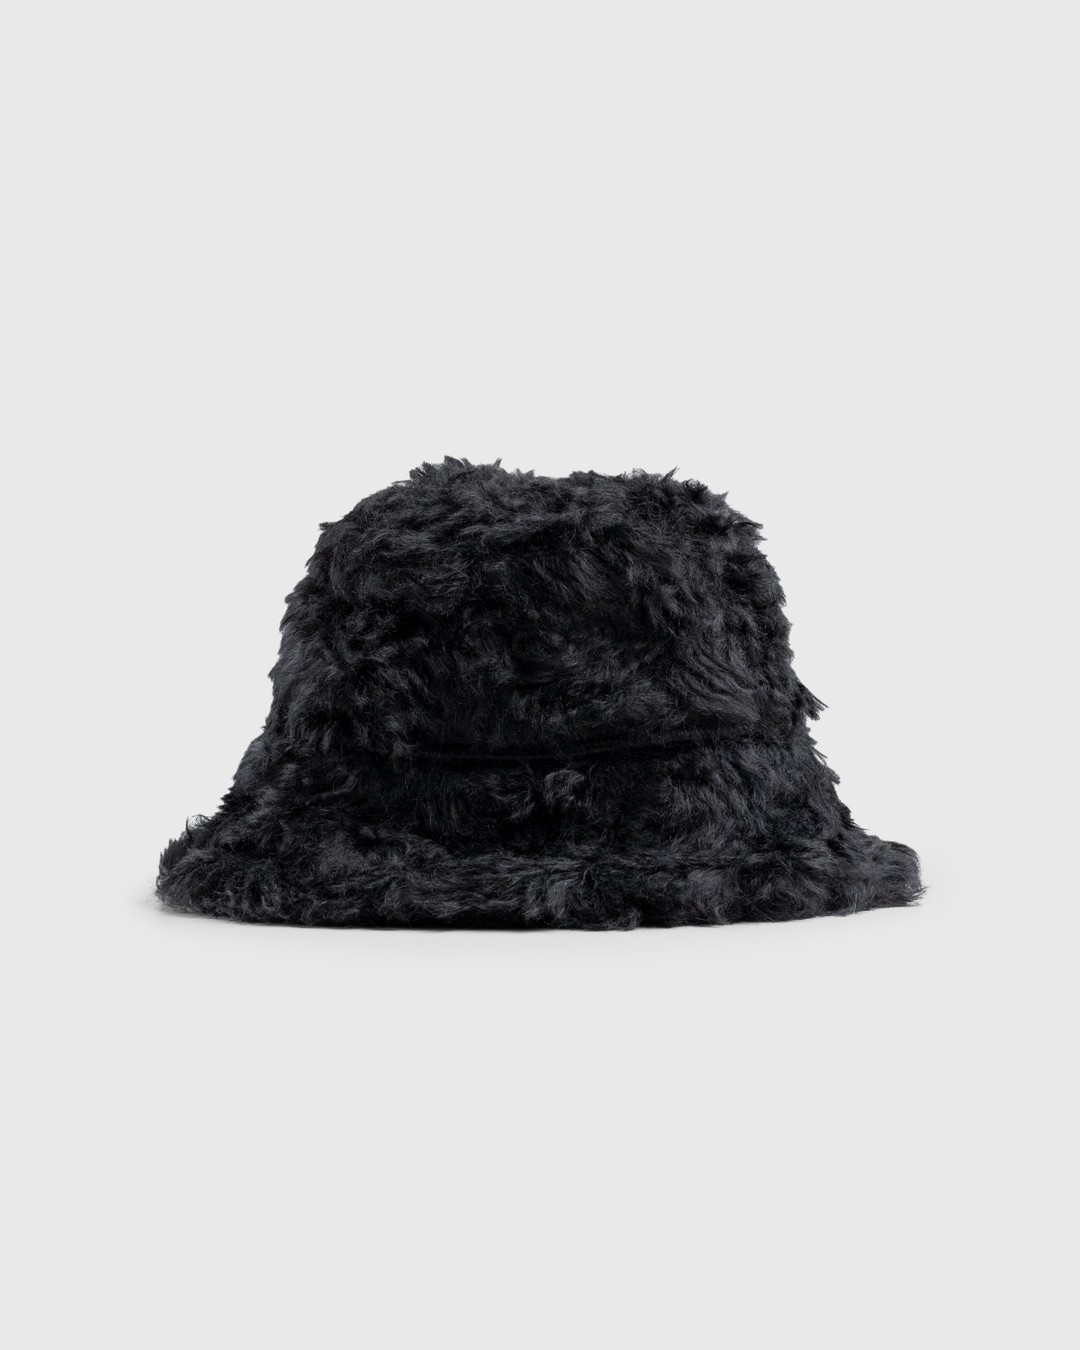 Dries van Noten – Mohair Gilly Hat Black - Hats - Black - Image 1